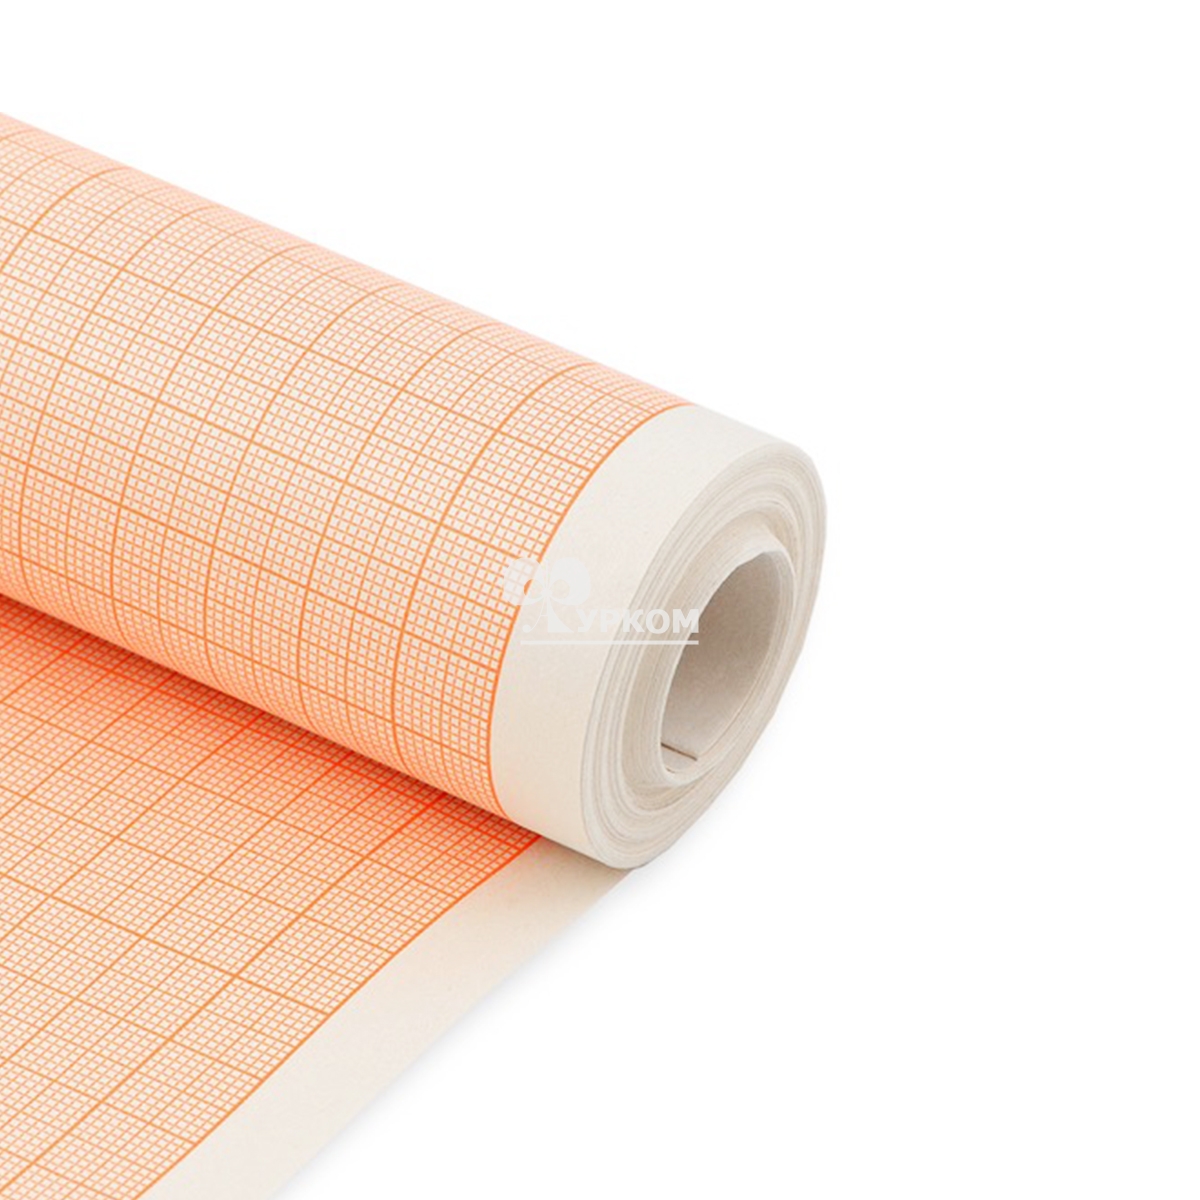 Миллиметровая бумага (масштабно-координатная) в рулоне 5 м, ширина 64 см, 64005